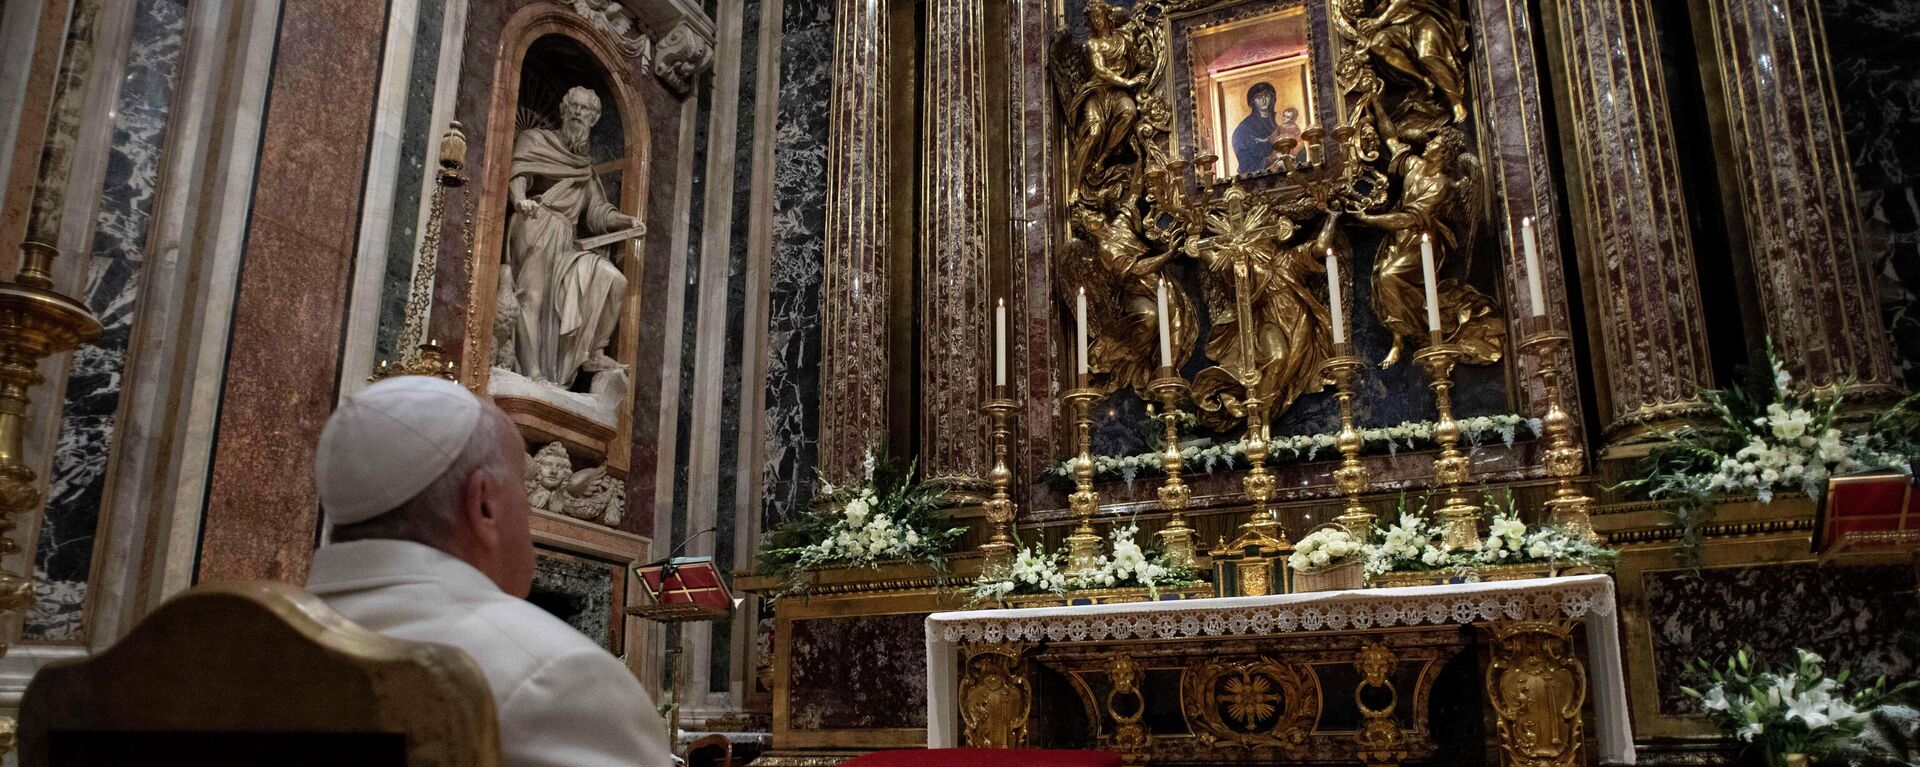 El papa Francisco reza frente al icono de María 'Salus Populi Romani' ('Salvación del Pueblo Romano') en la Basílica de Santa Maria Maggiore, en Roma, Italia, el 8 de diciembre de 2021 - Sputnik Mundo, 1920, 16.12.2021